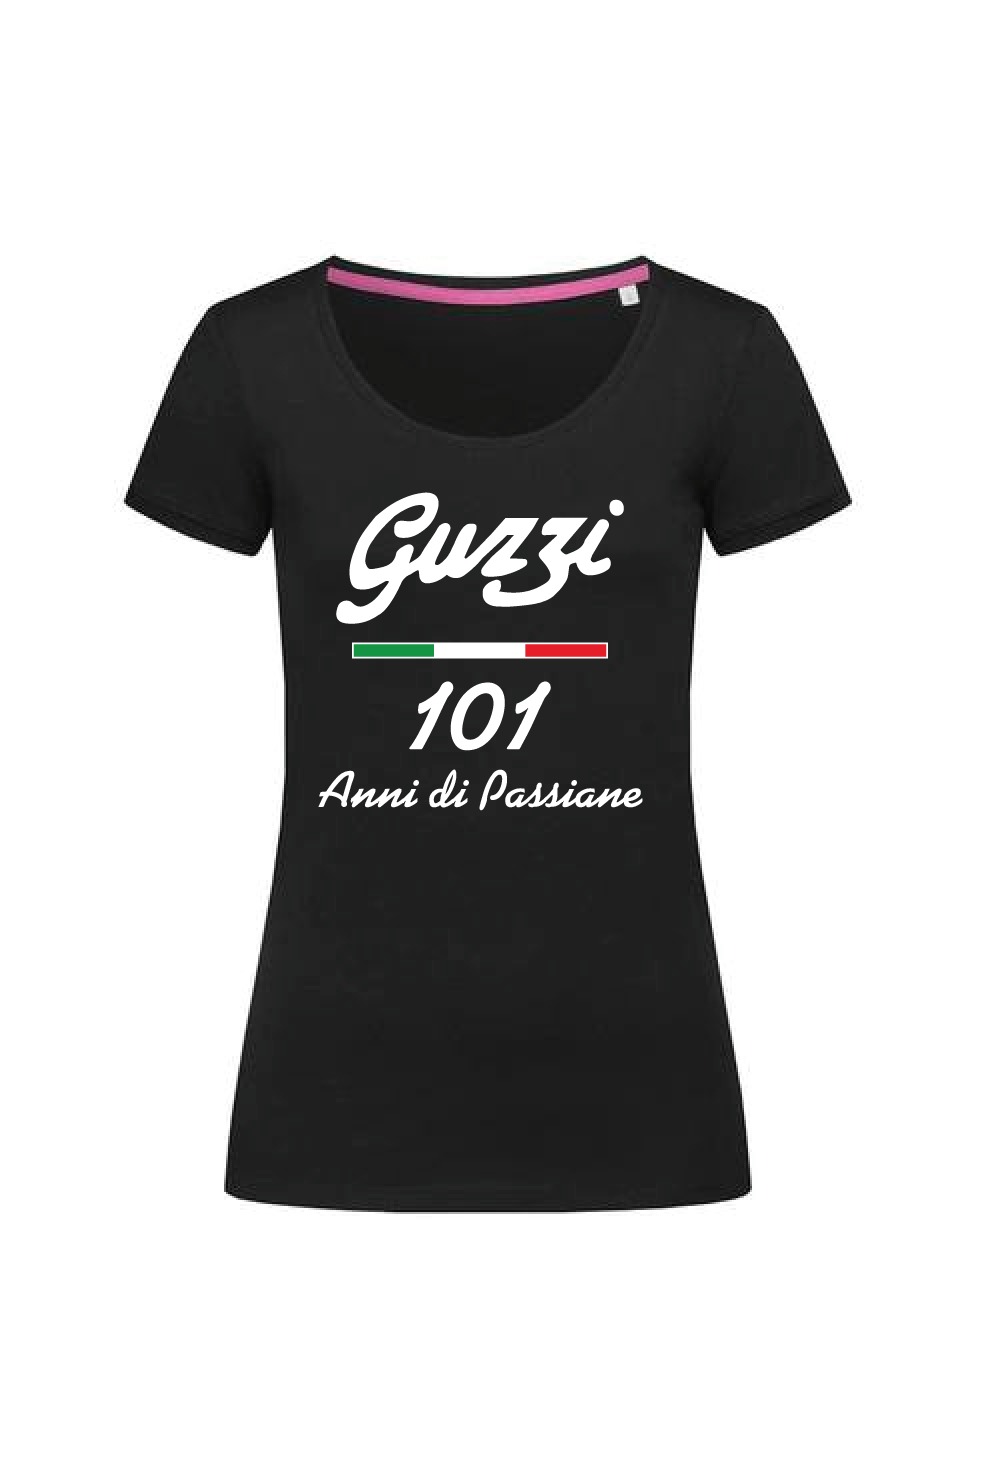 IN ARRIVO T-shirt donna 101° nera